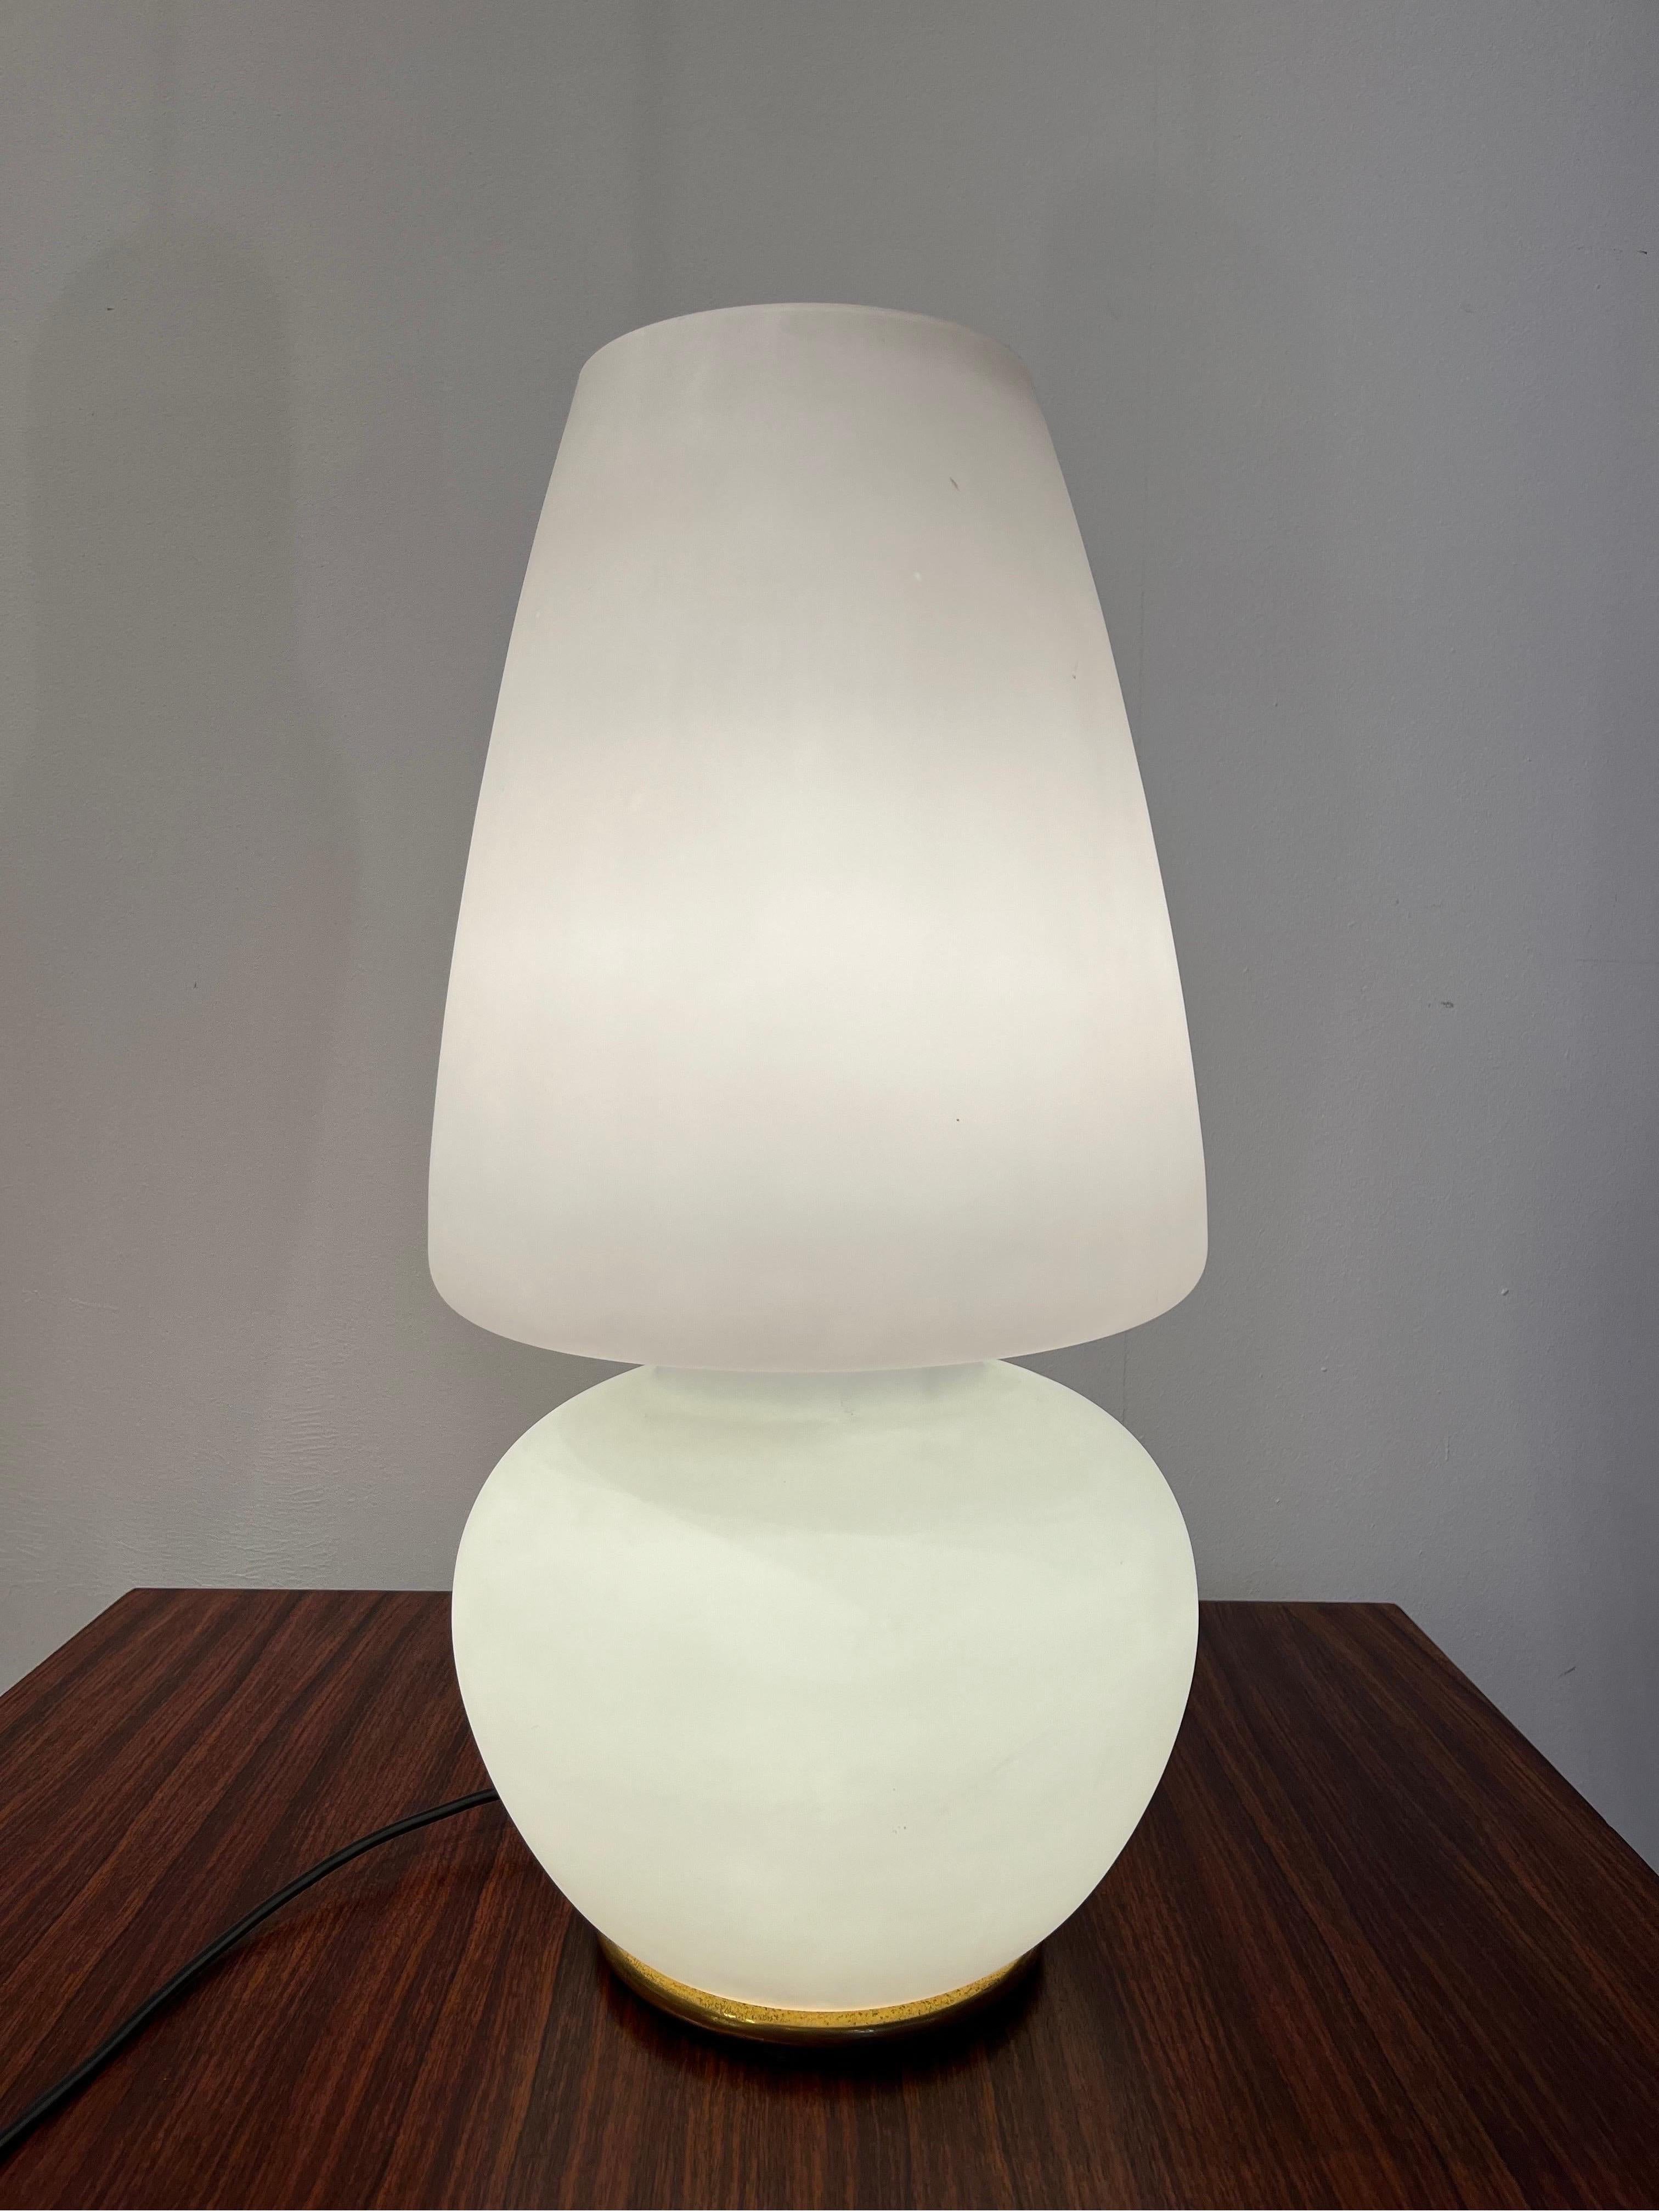 VeArt est un atelier de Murano qui concevait et produisait des objets en verre. La présente lampe est en verre opalin blanc. Il a trois positions de marche, en bas,  en haut, et ainsi de suite. La base est en laiton.